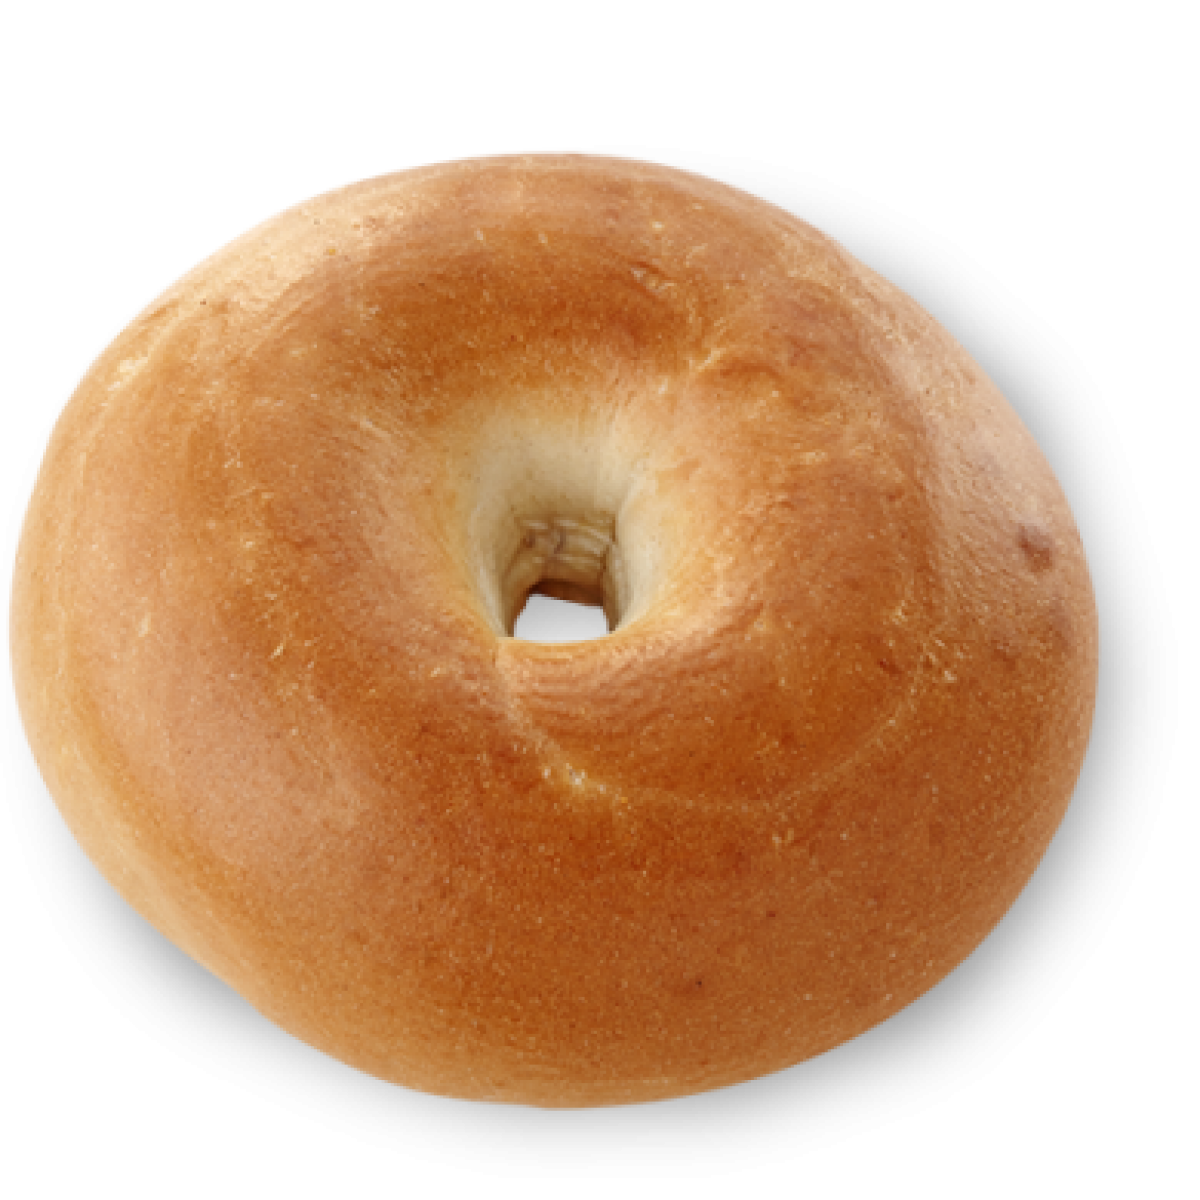 Bagel Bread